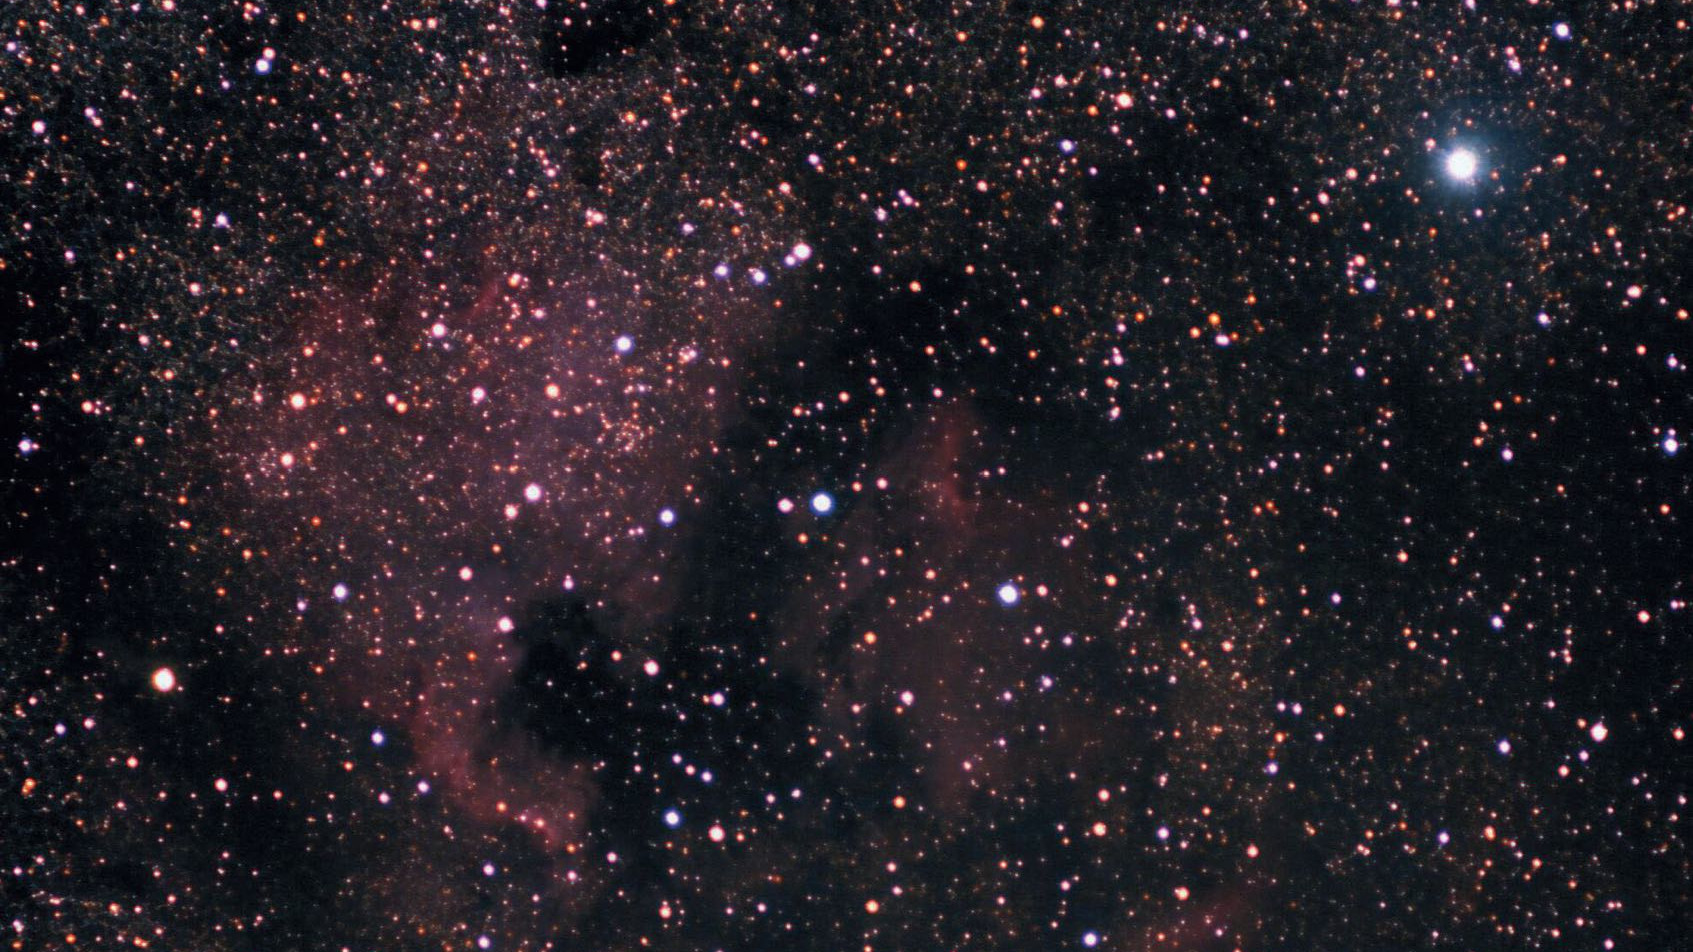 Na południowy wschód od Deneba (jasna gwiazda u góry po prawej) leży jedna z najpiękniejszych mgławic gazowych Ameryka Północna, NGC 7000. Mini Orion widoczny jest na lewo od środka kadru, lub na zachód od Zatoki Meksykańskiej. Marcus Degenkolbe